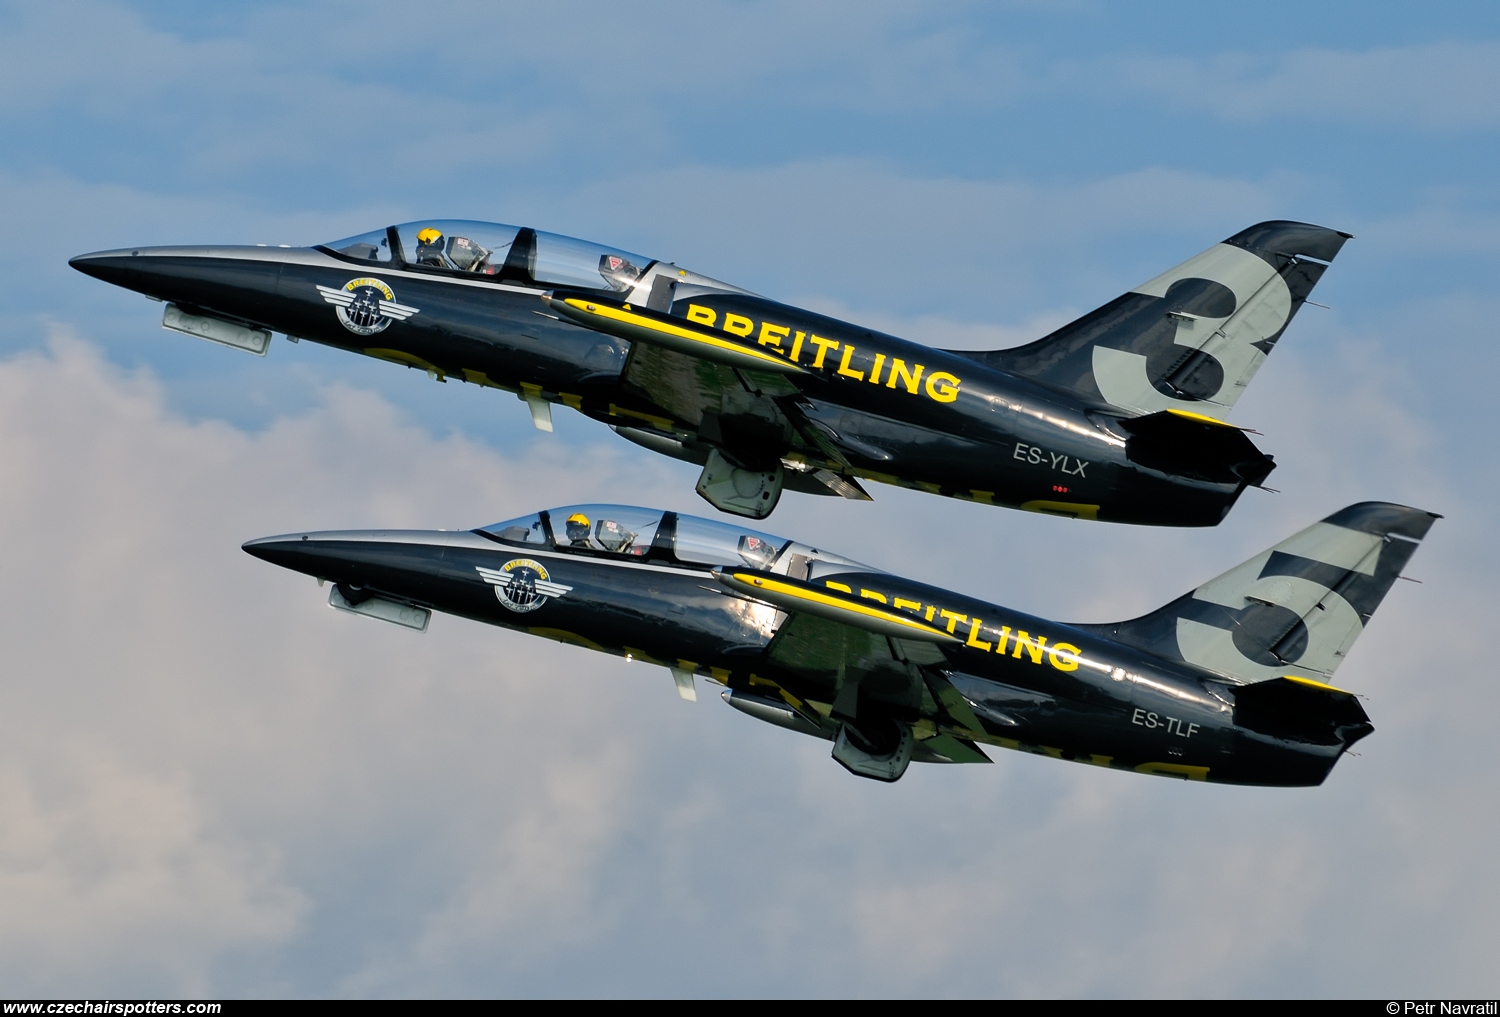 Breitling Jet Team – Aero L-39C Albatros ES-YLX + ES-TLF